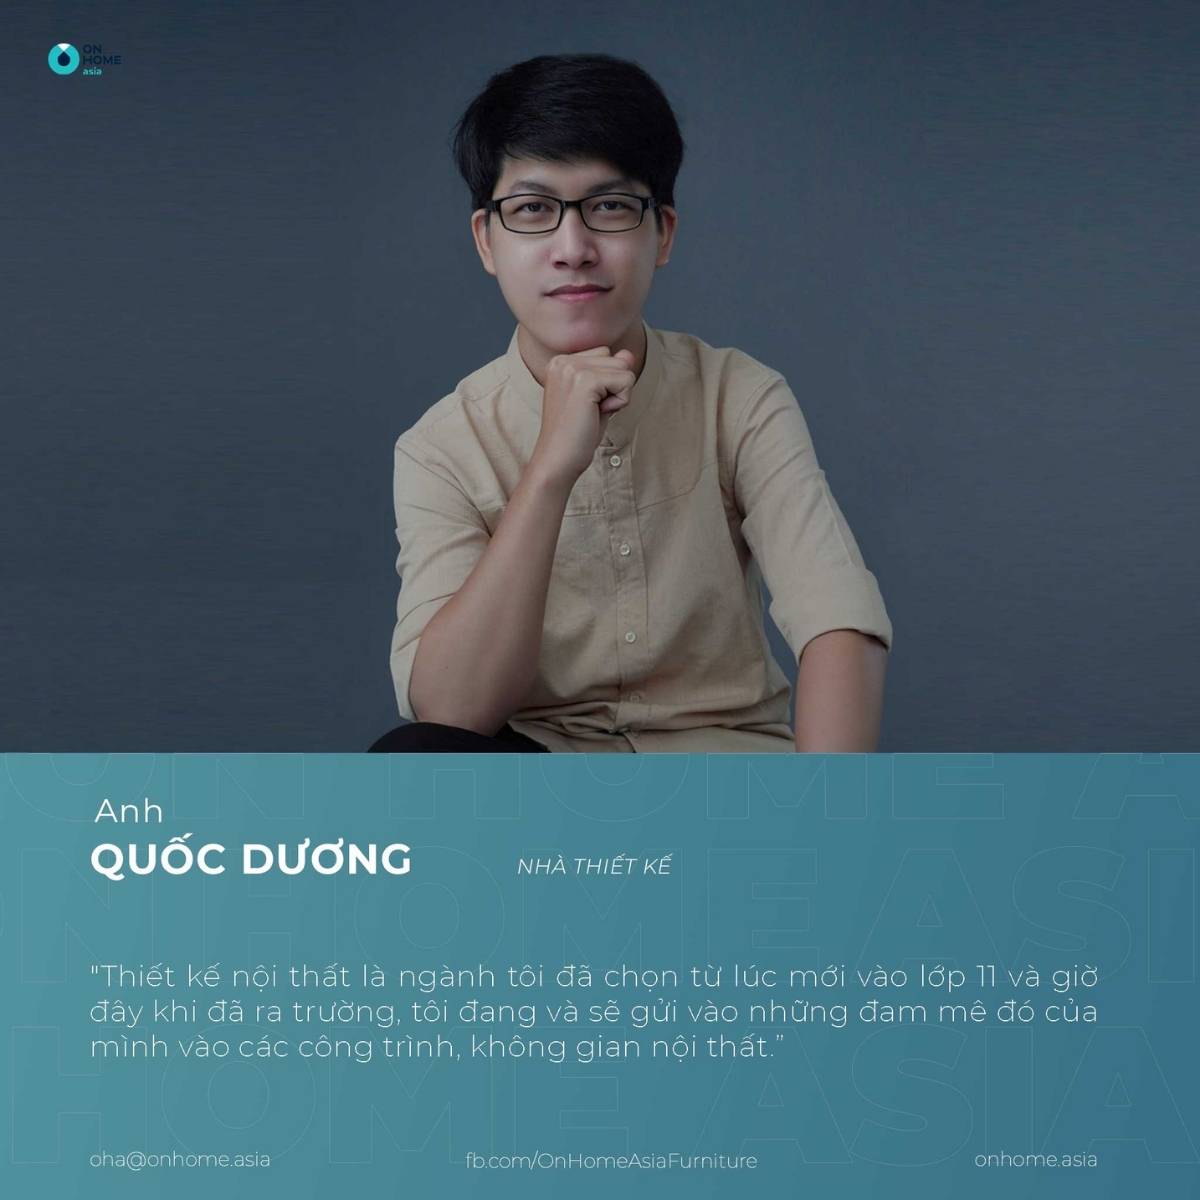 Designer: Mr. Quoc Duong